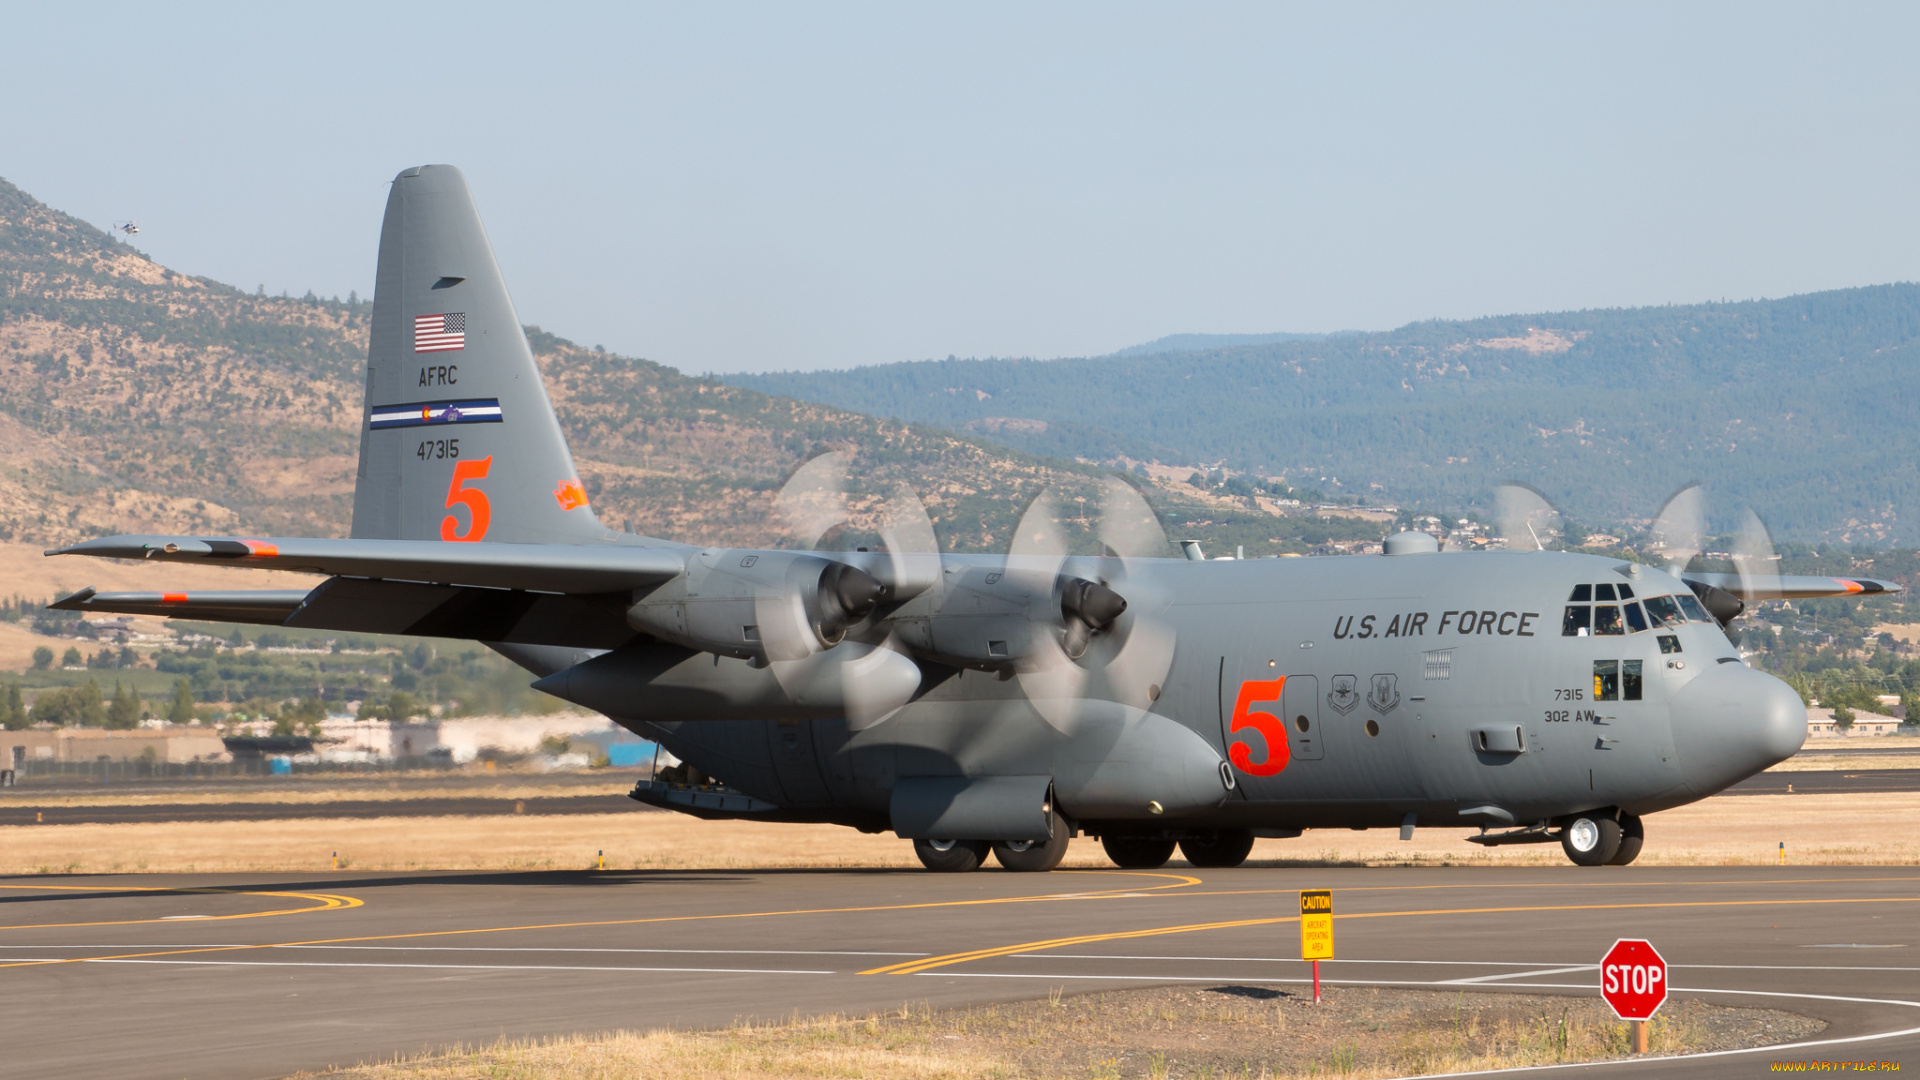 c-130h, hercules, авиация, военно-транспортные, самолёты, транспорт, войсковой